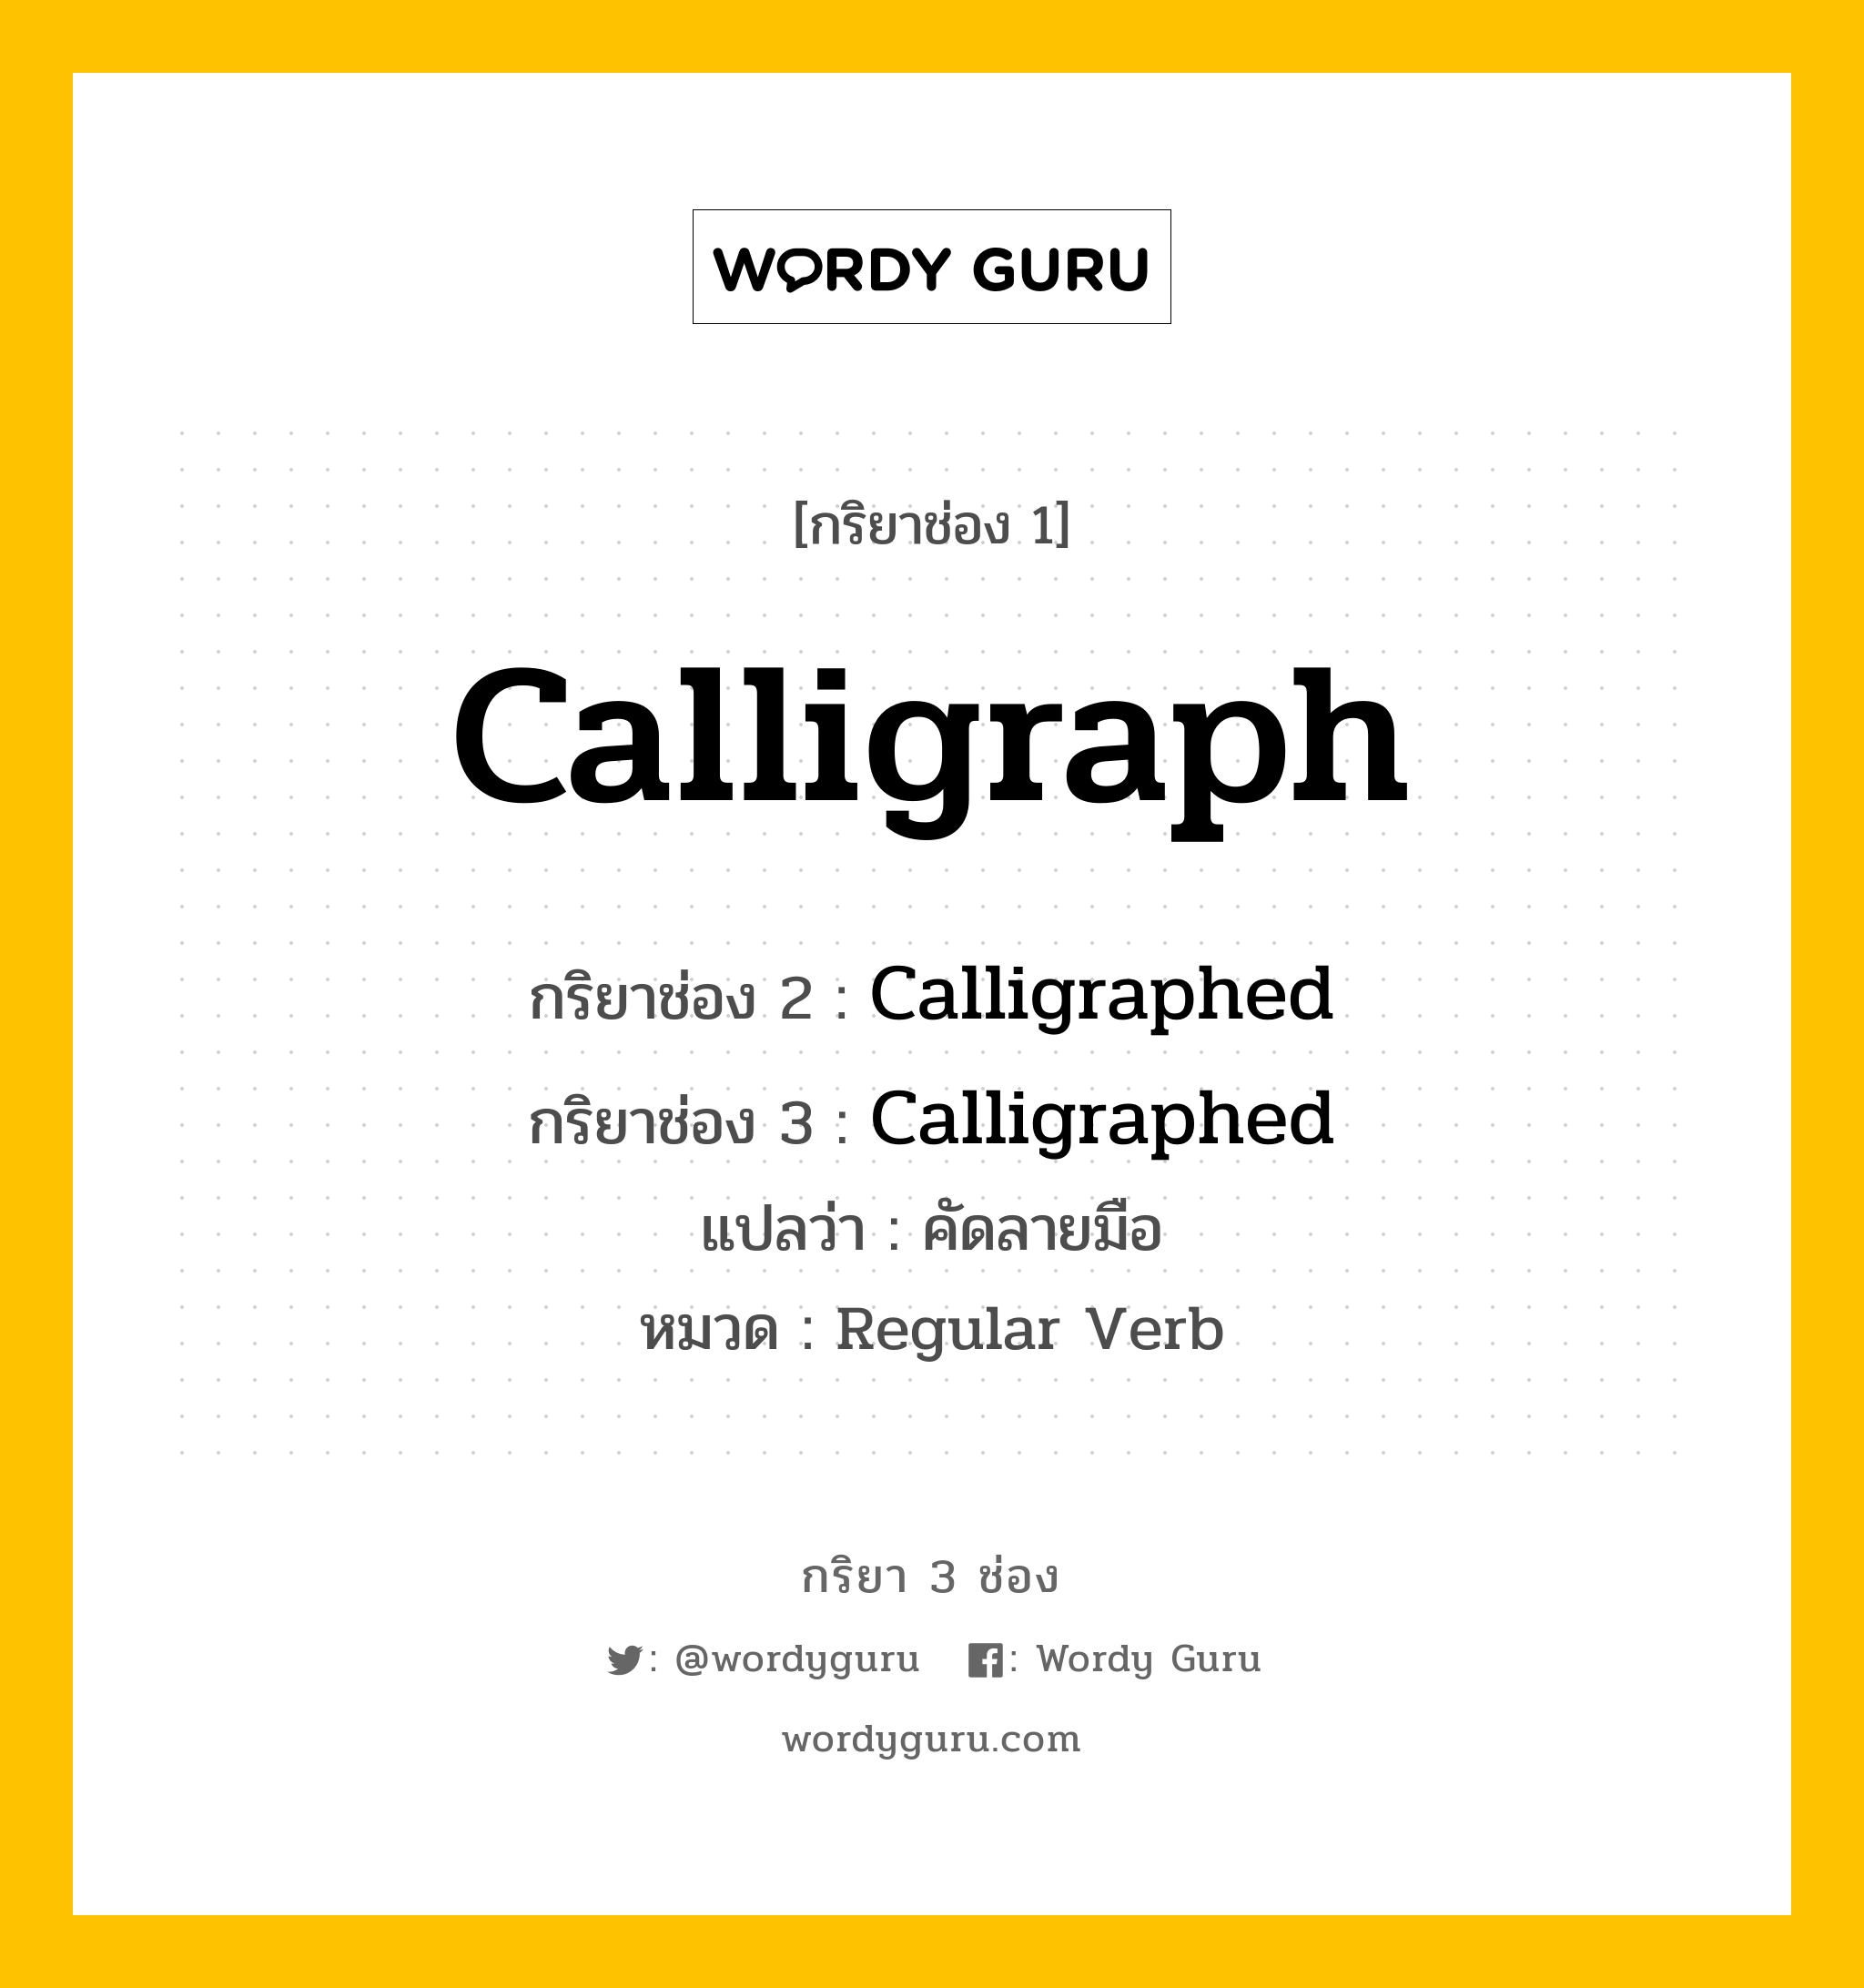 กริยา 3 ช่อง: Calligraph ช่อง 2 Calligraph ช่อง 3 คืออะไร, กริยาช่อง 1 Calligraph กริยาช่อง 2 Calligraphed กริยาช่อง 3 Calligraphed แปลว่า คัดลายมือ หมวด Regular Verb หมวด Regular Verb